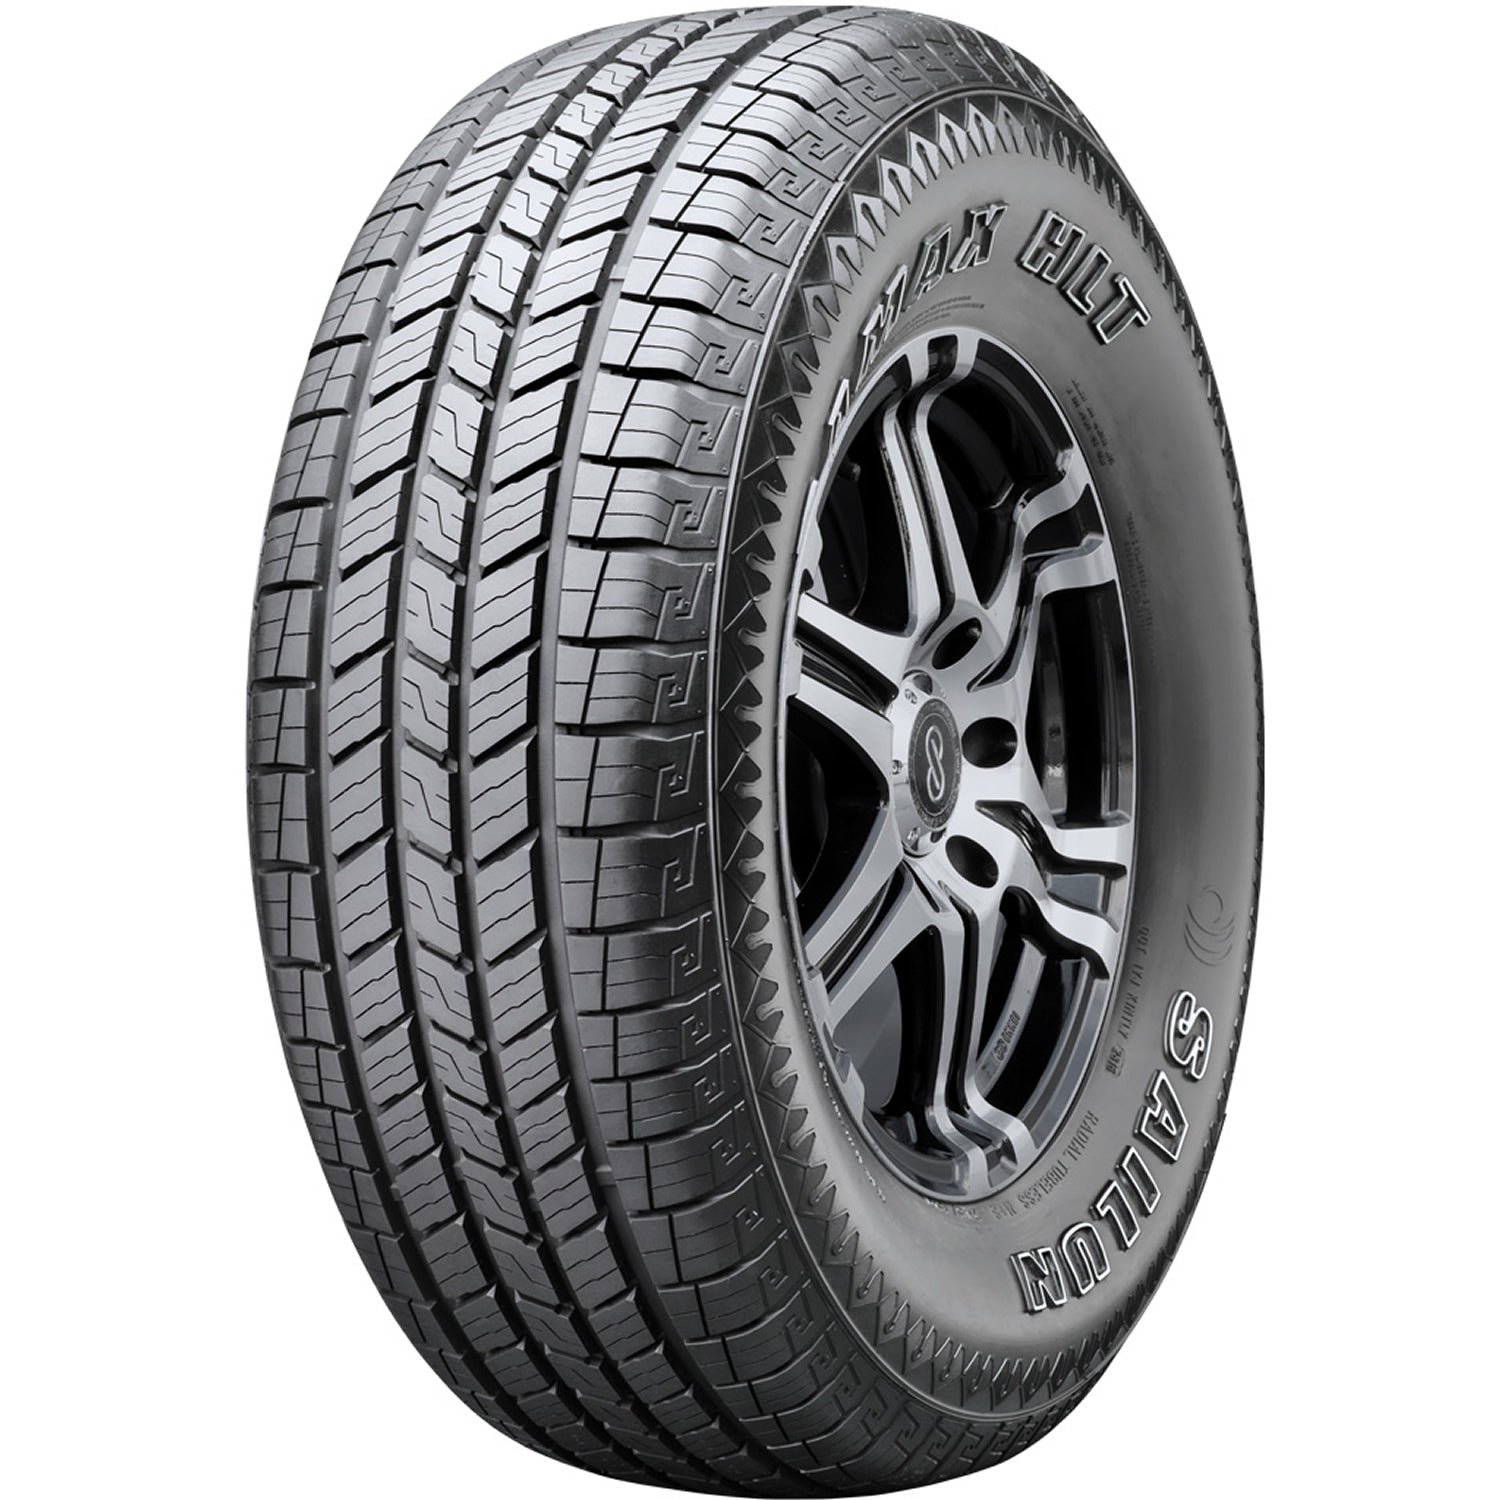 SAILUN TERRAMAX HLT LT265/70R17 (31.7X10.7R 17) Tires